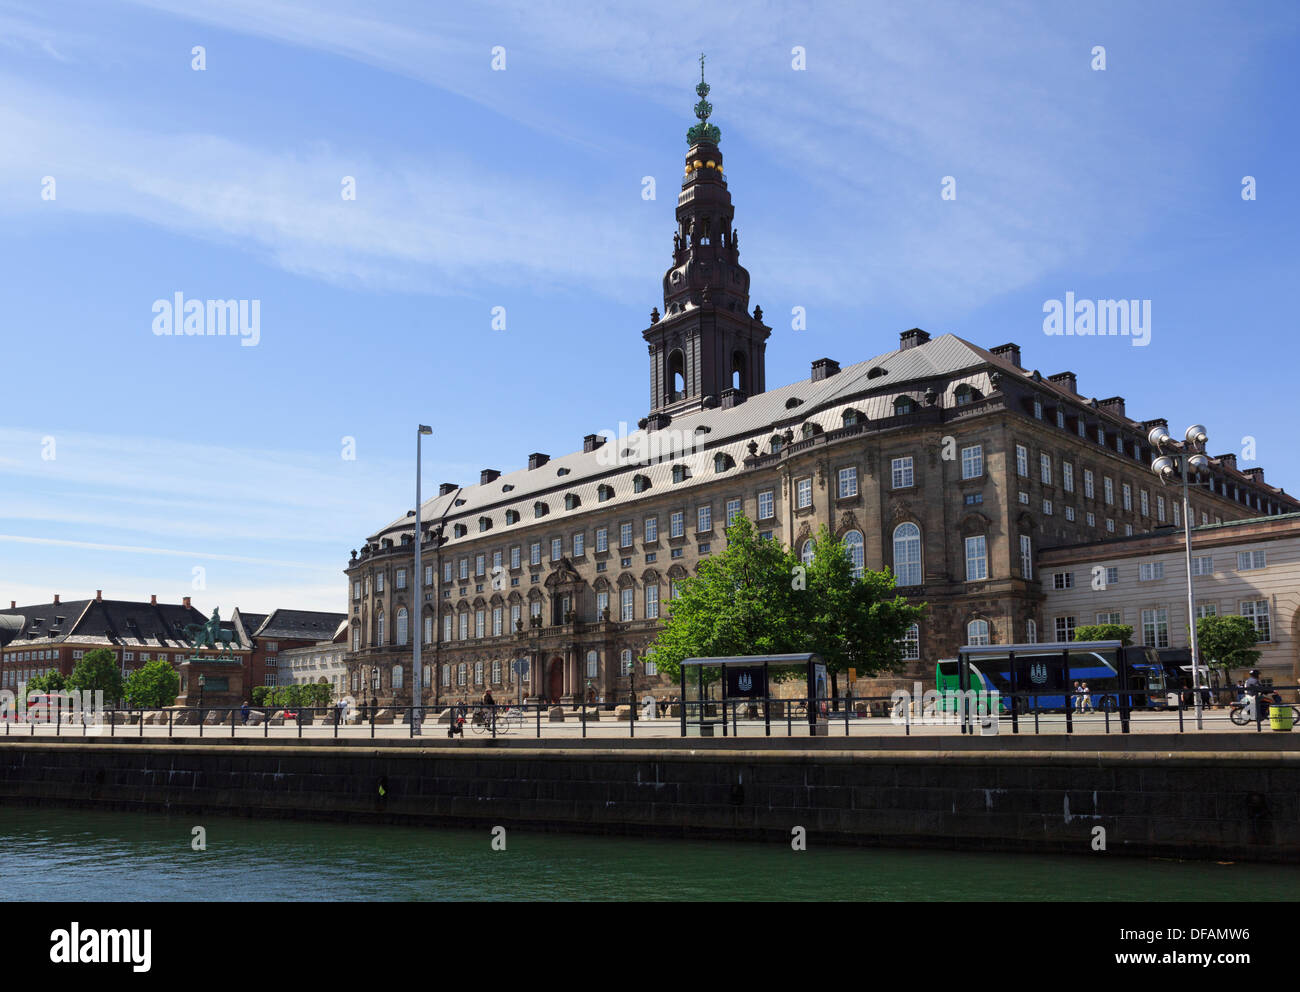 Bâtiment du Parlement danois Christiansborg Palace sur Slotsholmen ou château Isle à Copenhague, Danemark, Scandinavie Banque D'Images